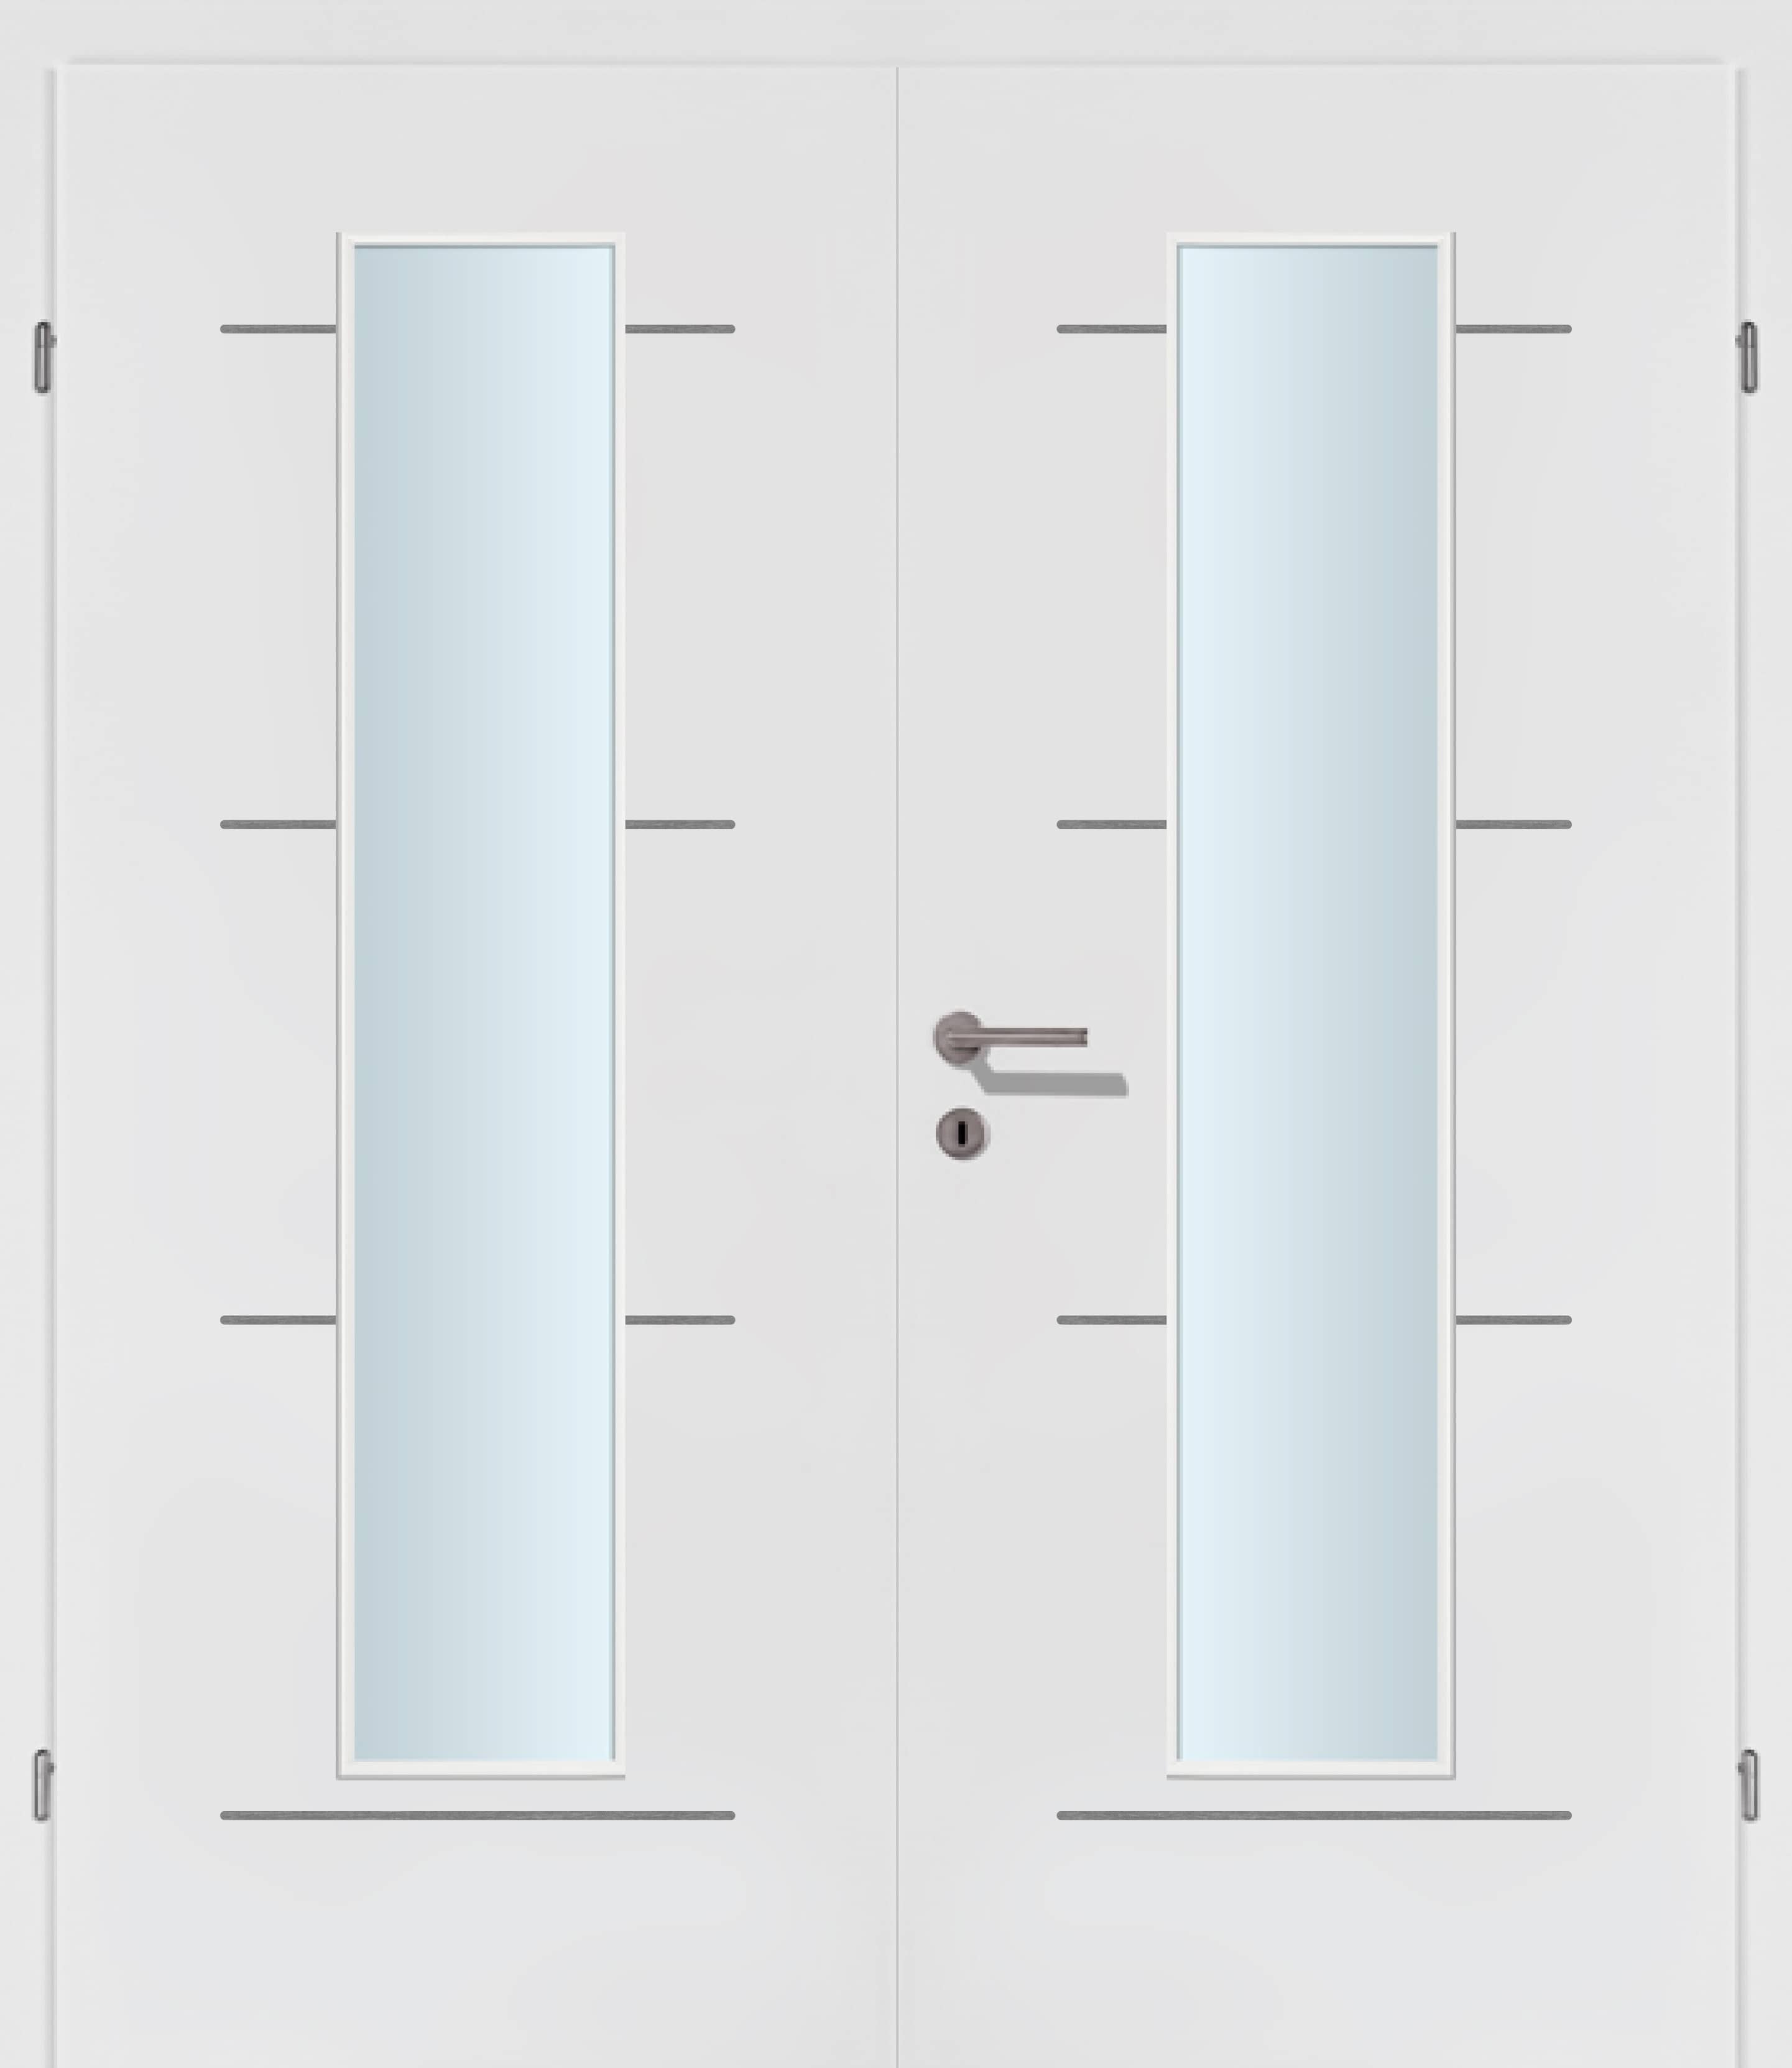 Selektion T49 Alu Effekt Lisenen weiss Innentür Inkl. Zarge (Türrahmen) Doppeltüre Inkl. Glaslichte EN Mittig